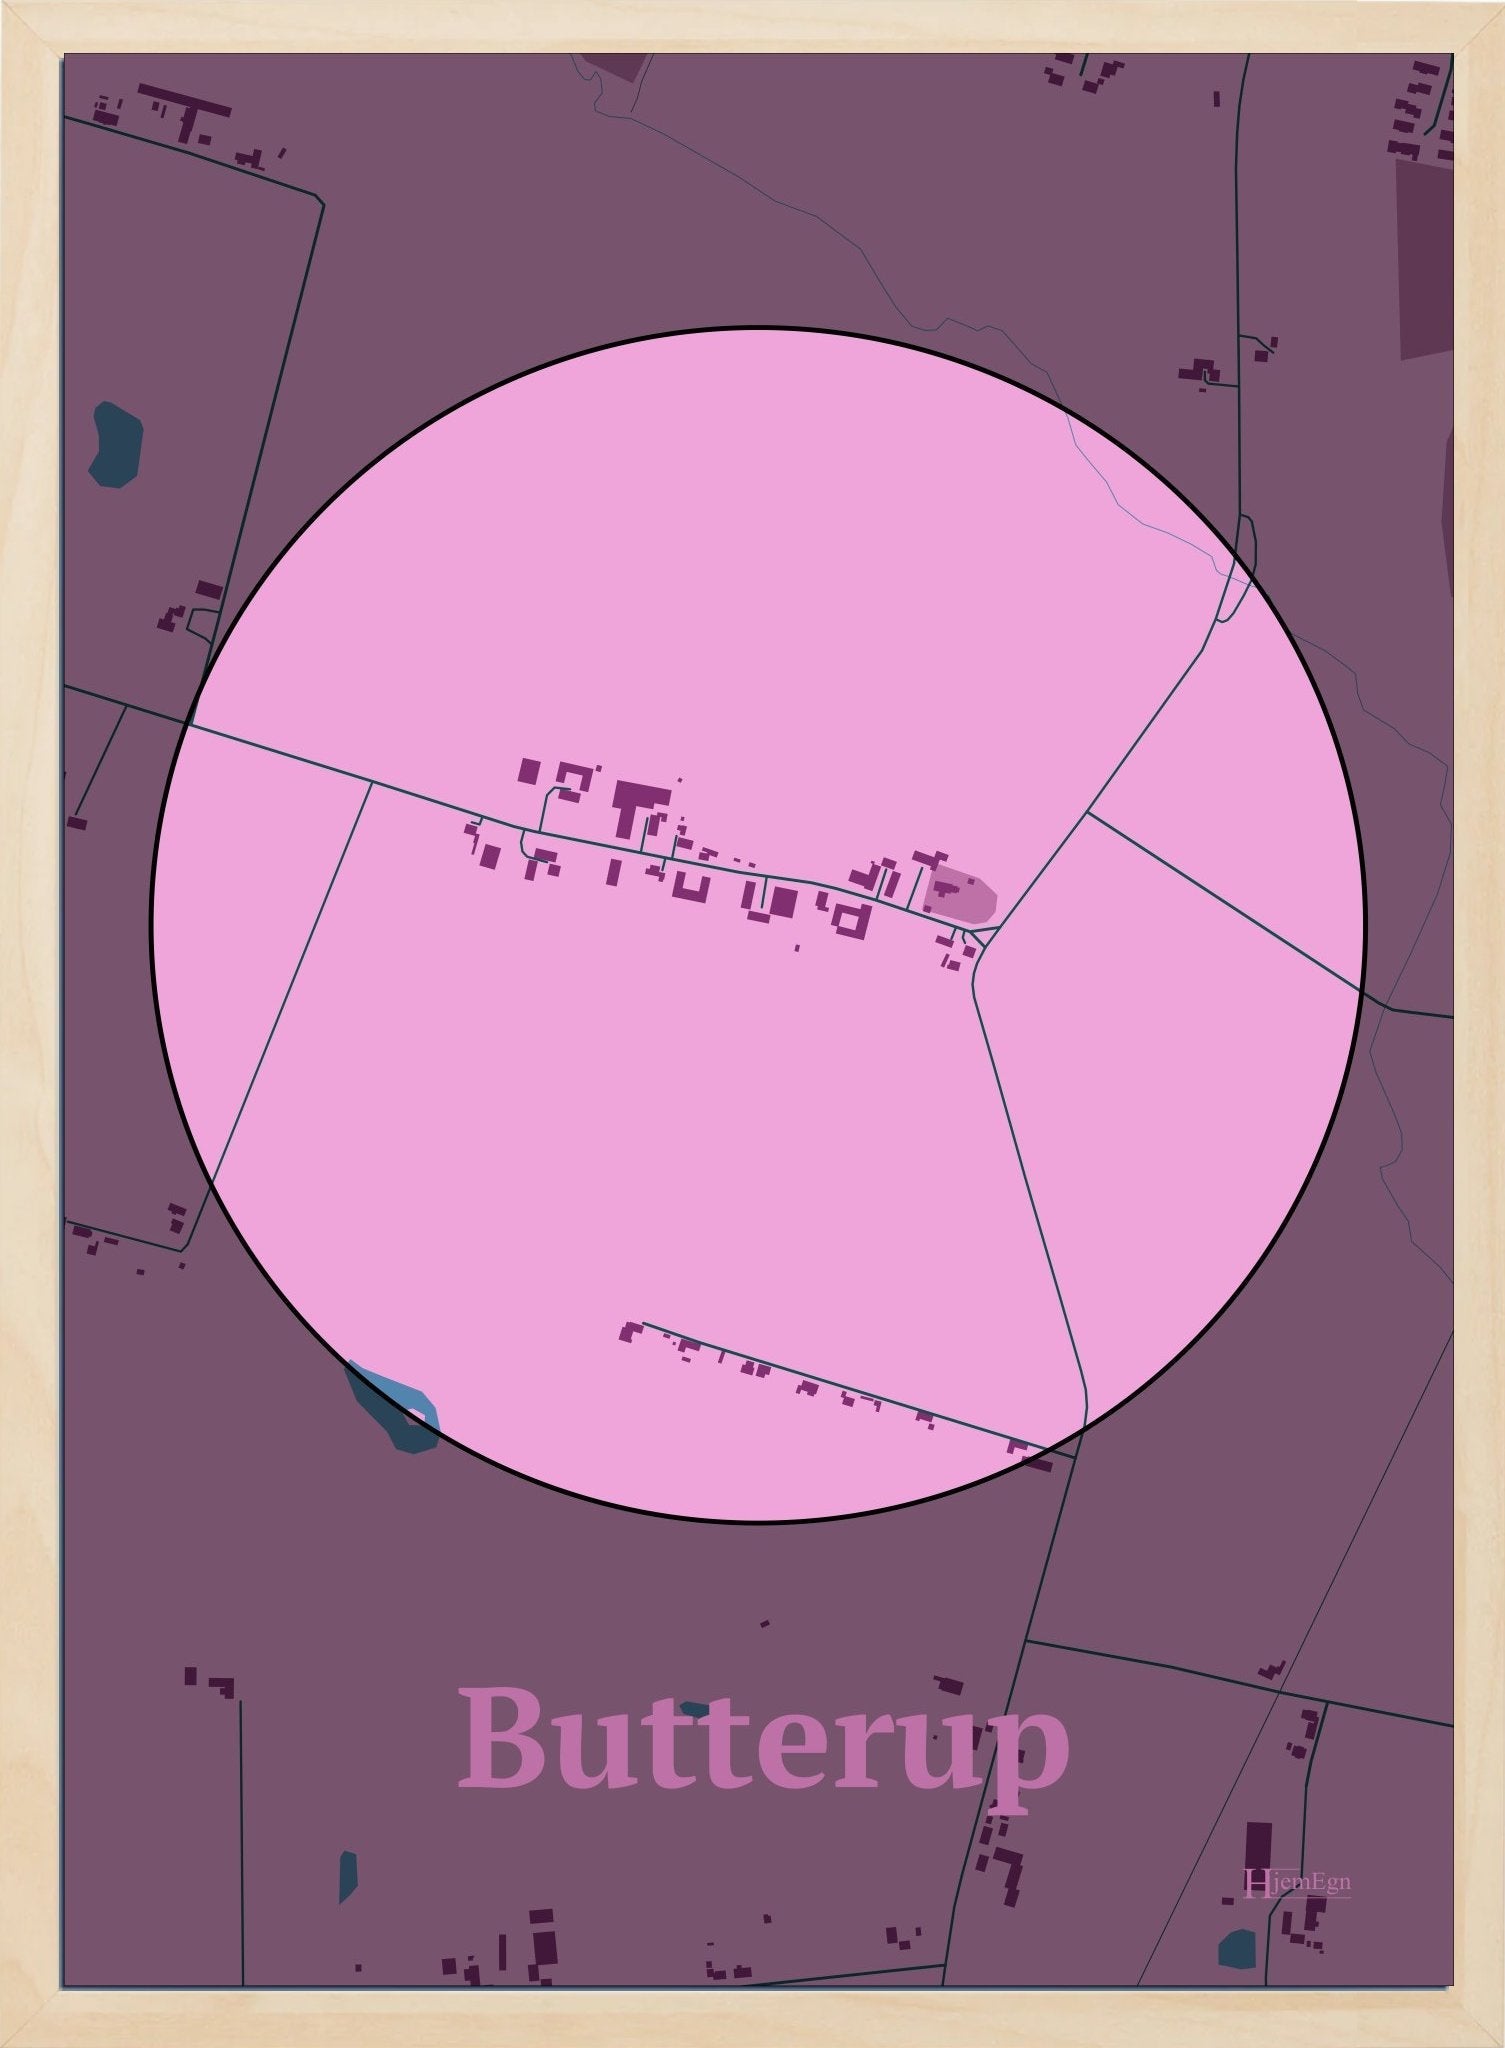 Butterup plakat i farve pastel rød og HjemEgn.dk design centrum. Design bykort for Butterup